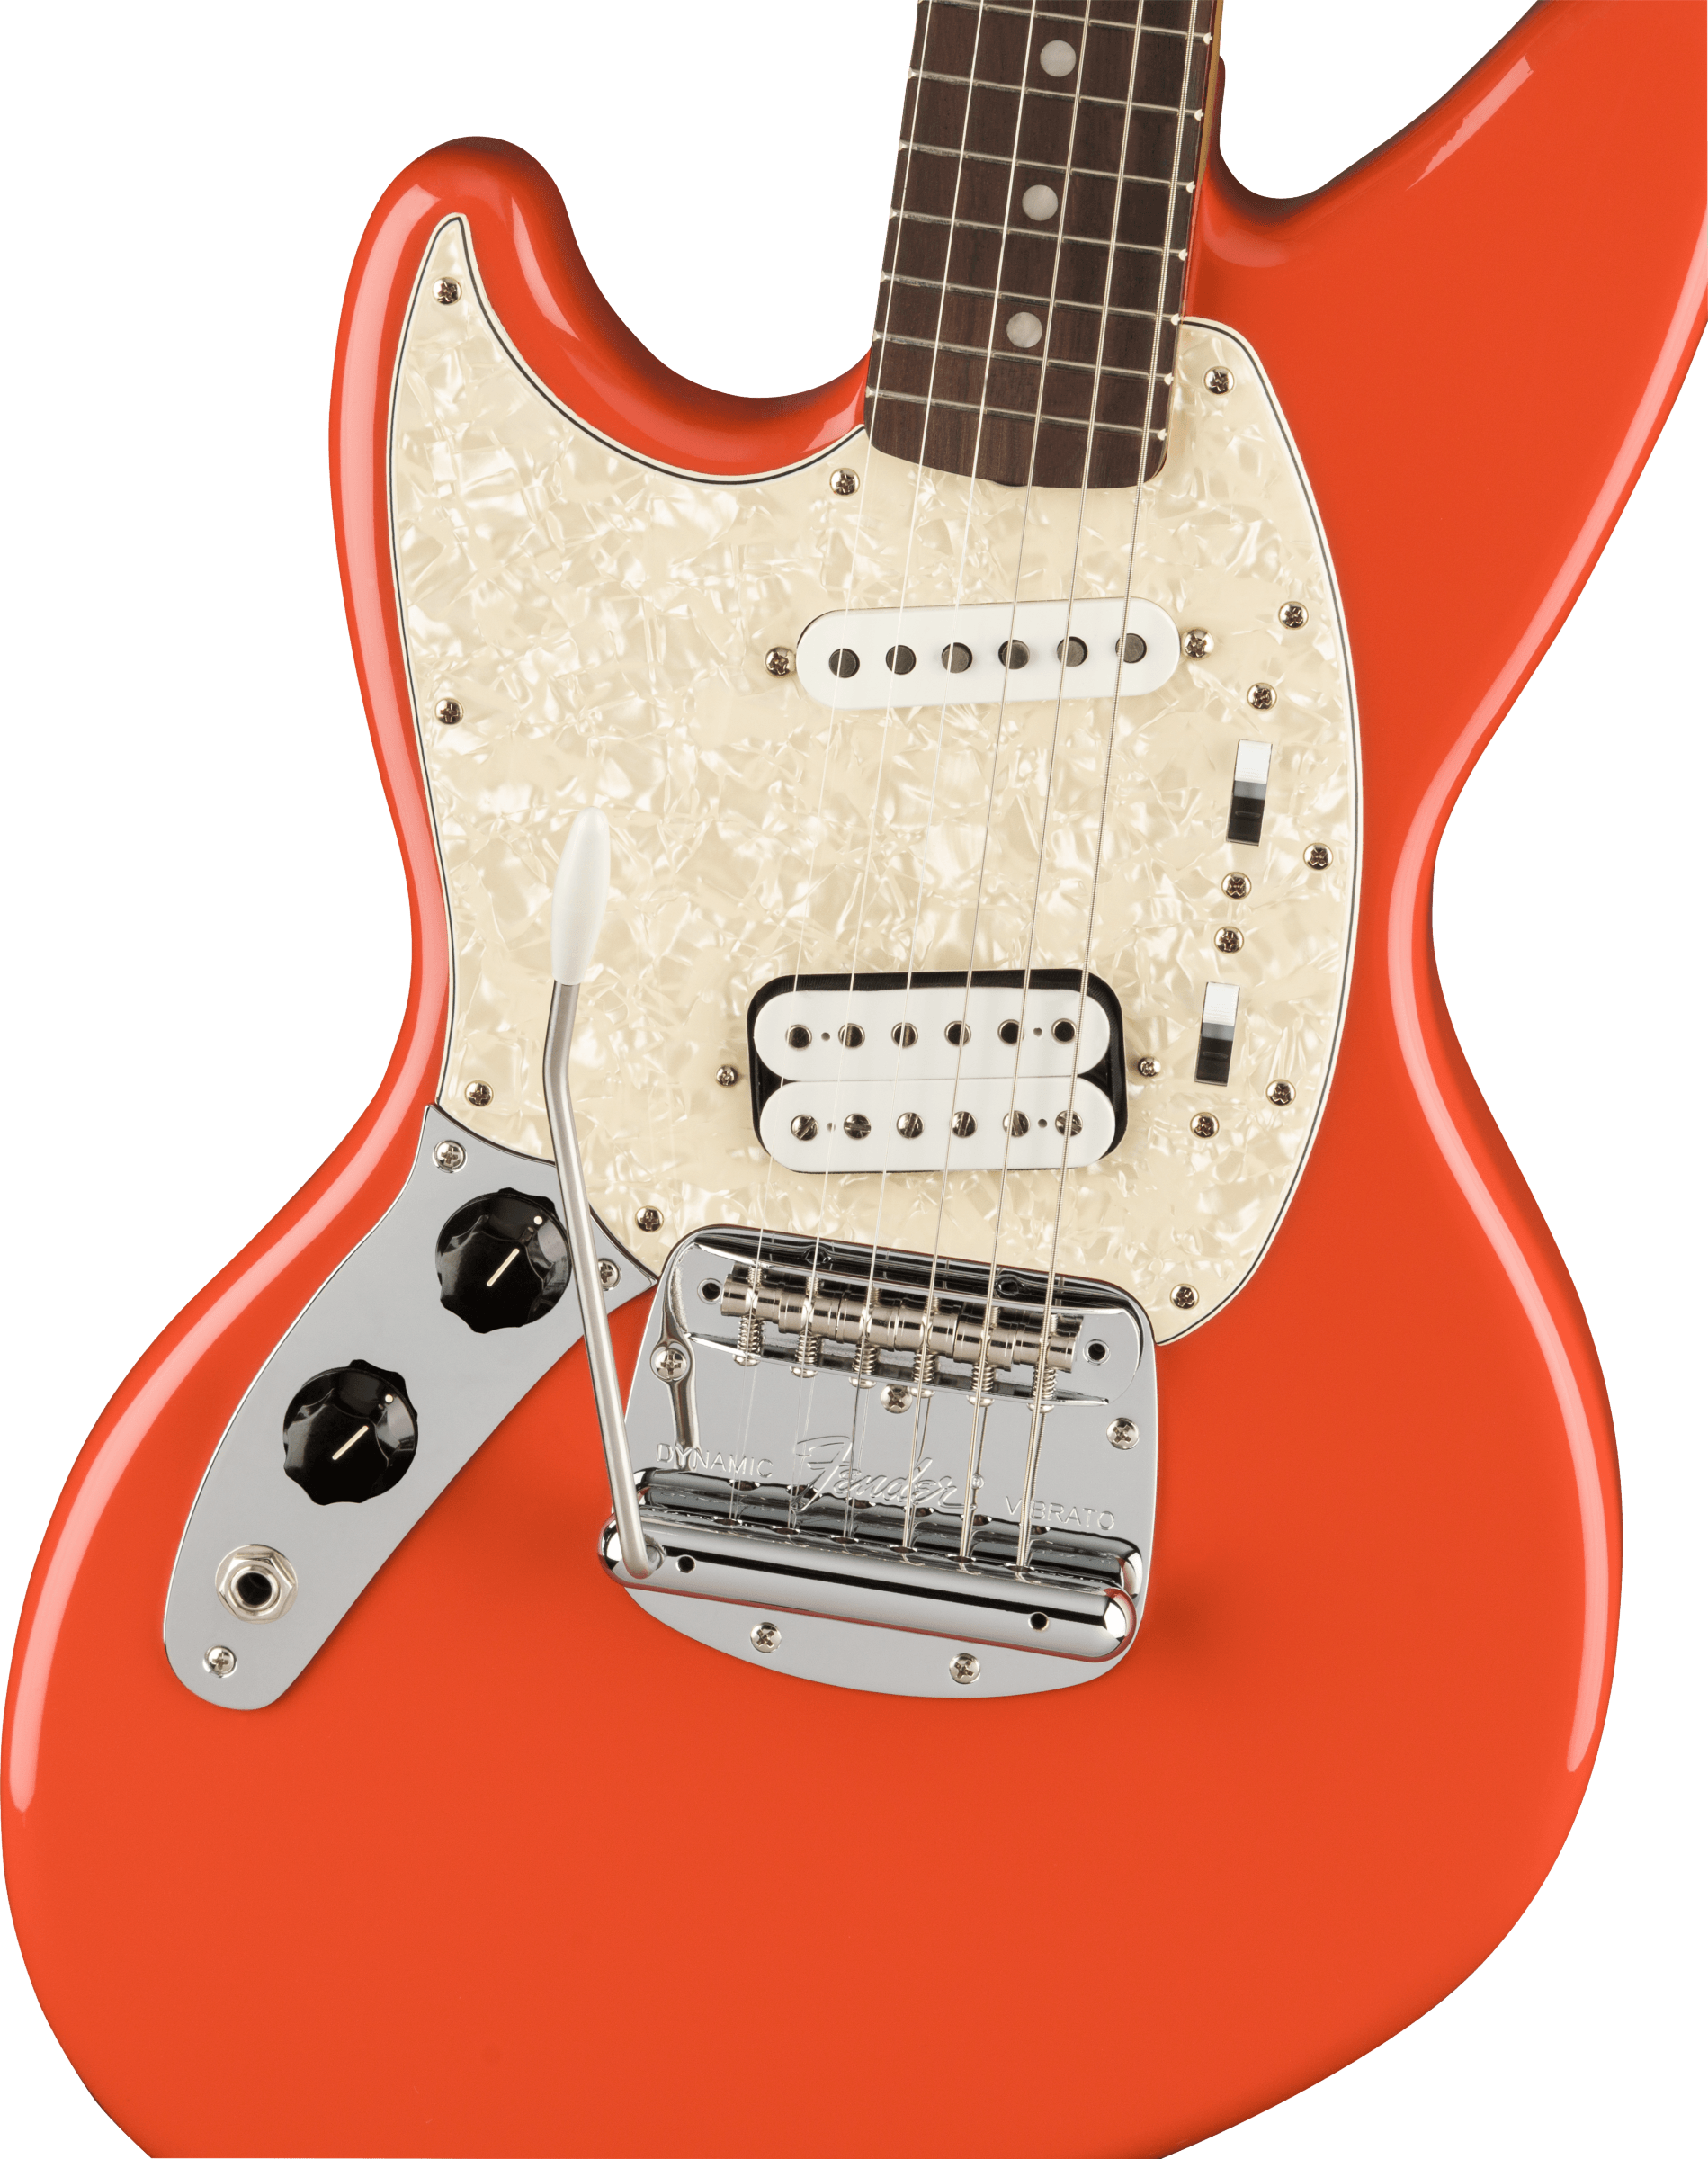 Fender Jag-stang Kurt Cobain Artist Gaucher Hs Trem Rw - Fiesta Red - Guitare Électrique Gaucher - Variation 2